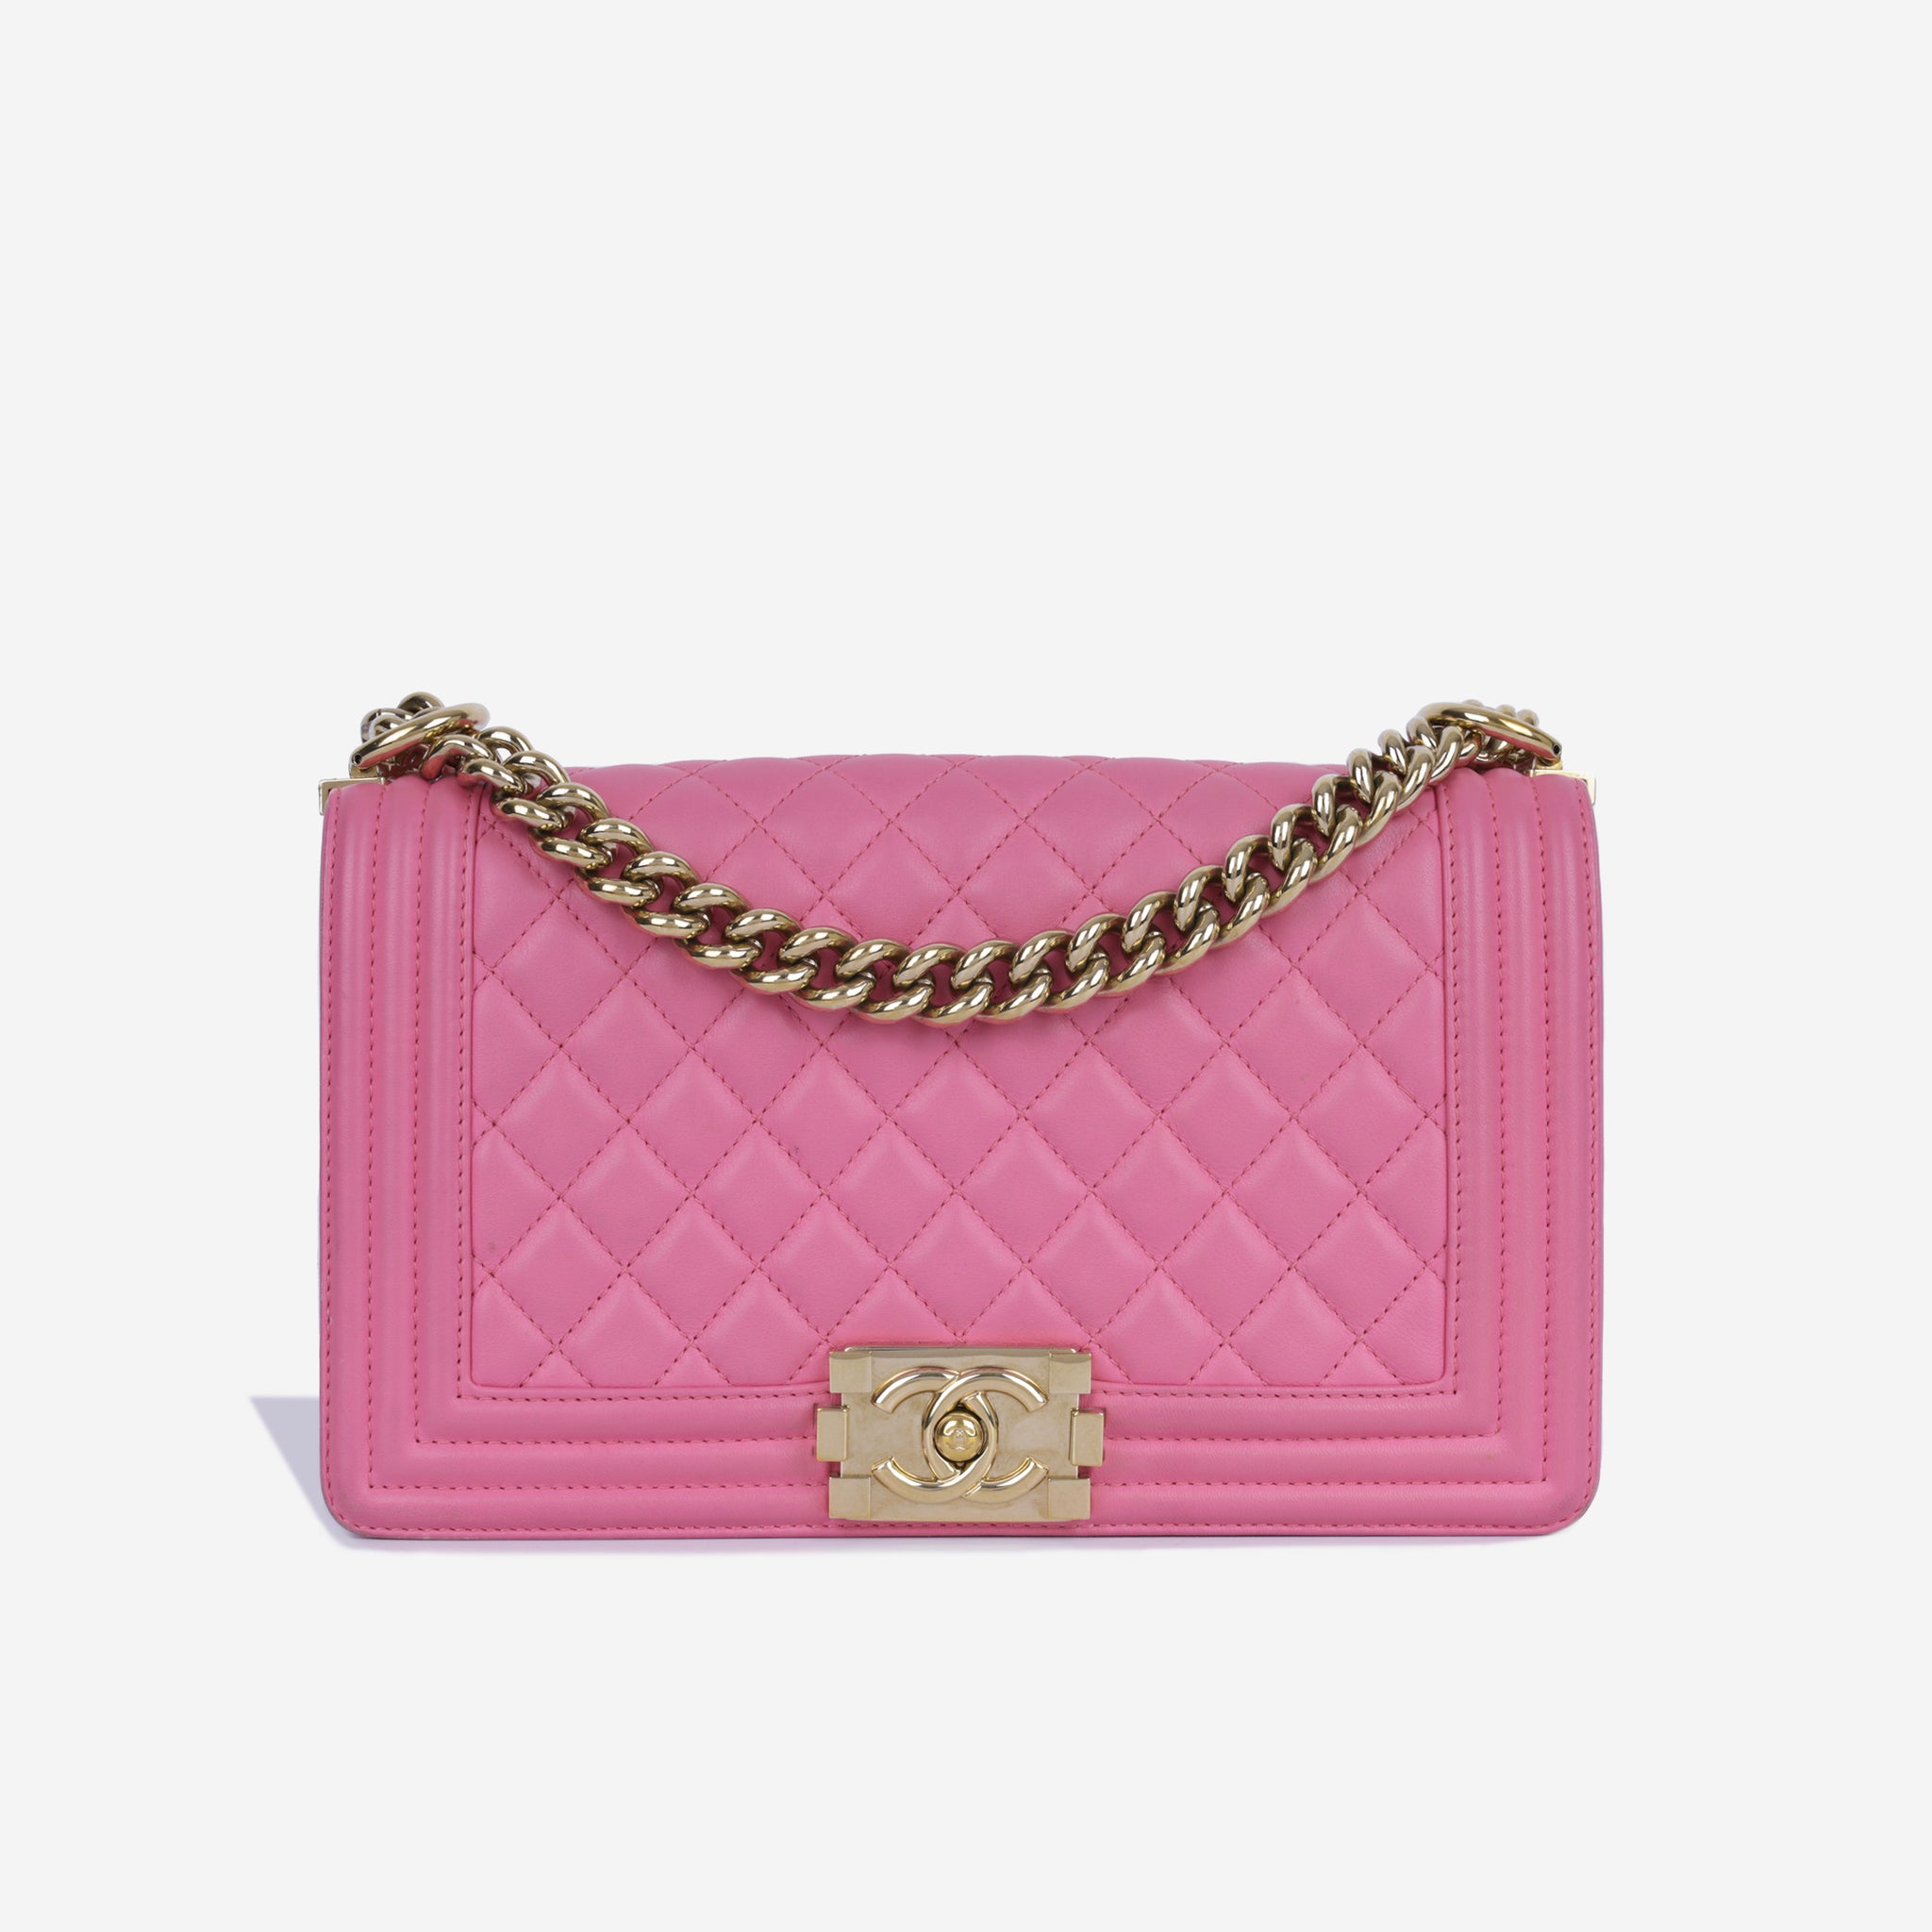 Chanel - Old Medium Boy Bag - Pink Lambskin - GHW - 2015